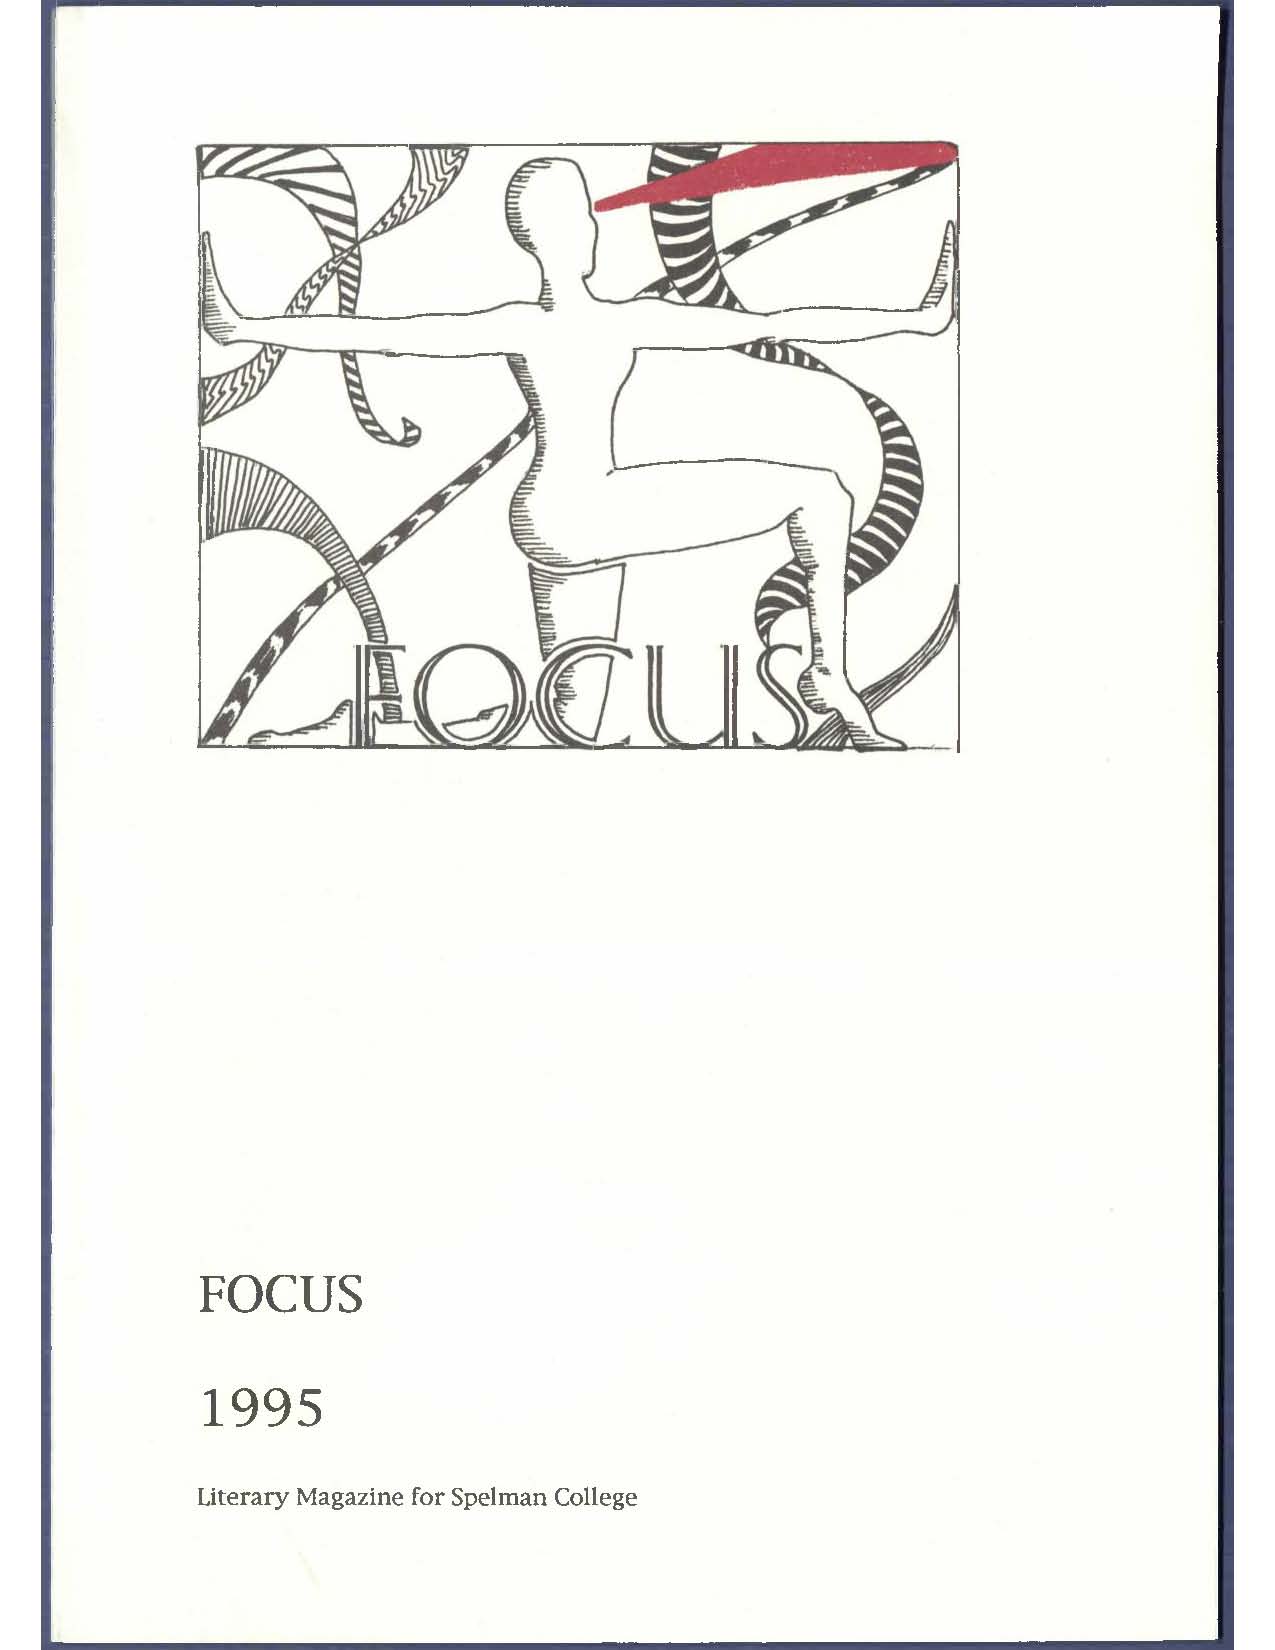 Focus 1995 cover image